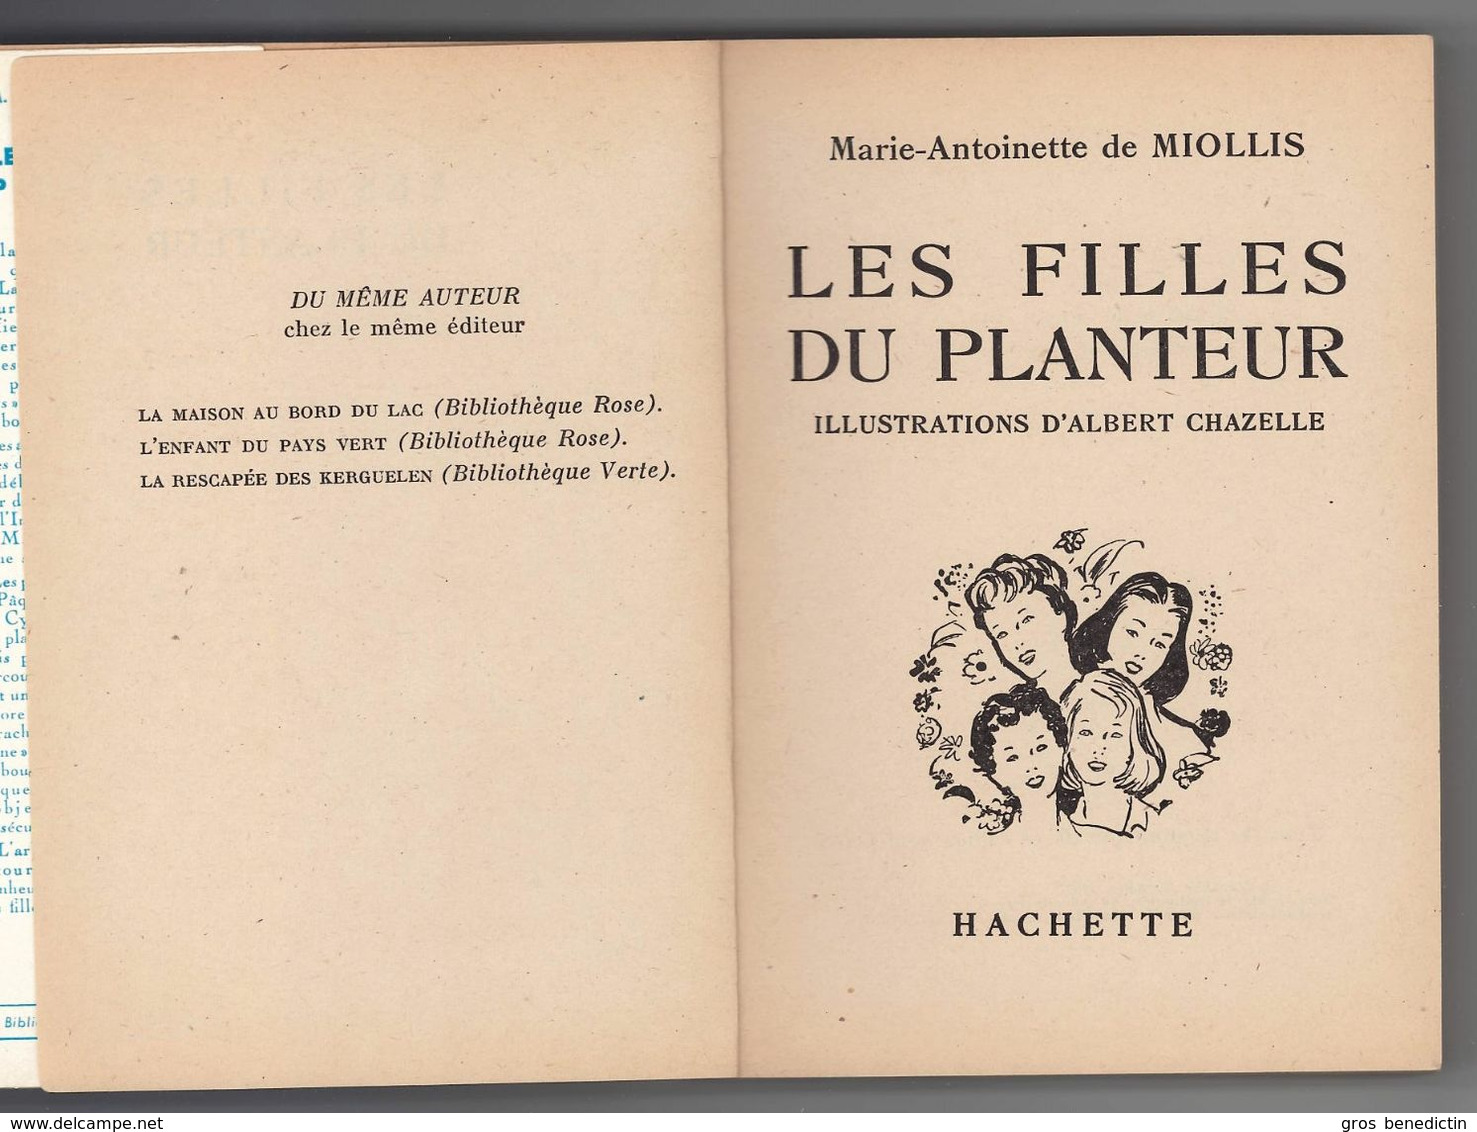 Hachette - Bib. De La Jeunesse Avec Jaquette - Marie Antoinette De Miollis - "Les Filles Du Planteur" - 1957- #Ben&BJanc - Bibliotheque De La Jeunesse